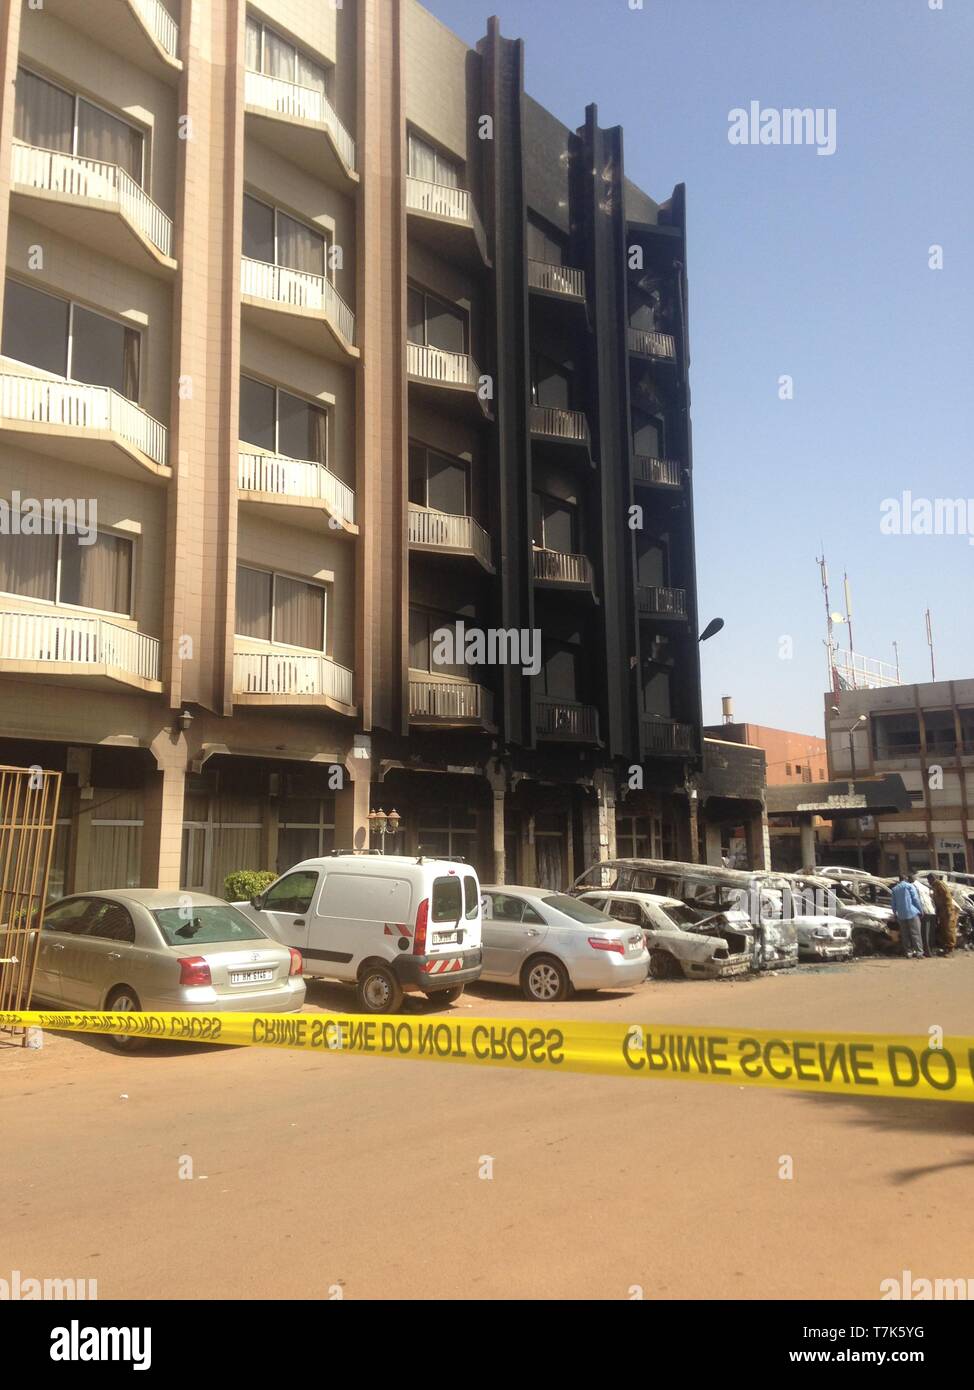 Burkina-faso bomb blast  in ouagadougou Stock Photo